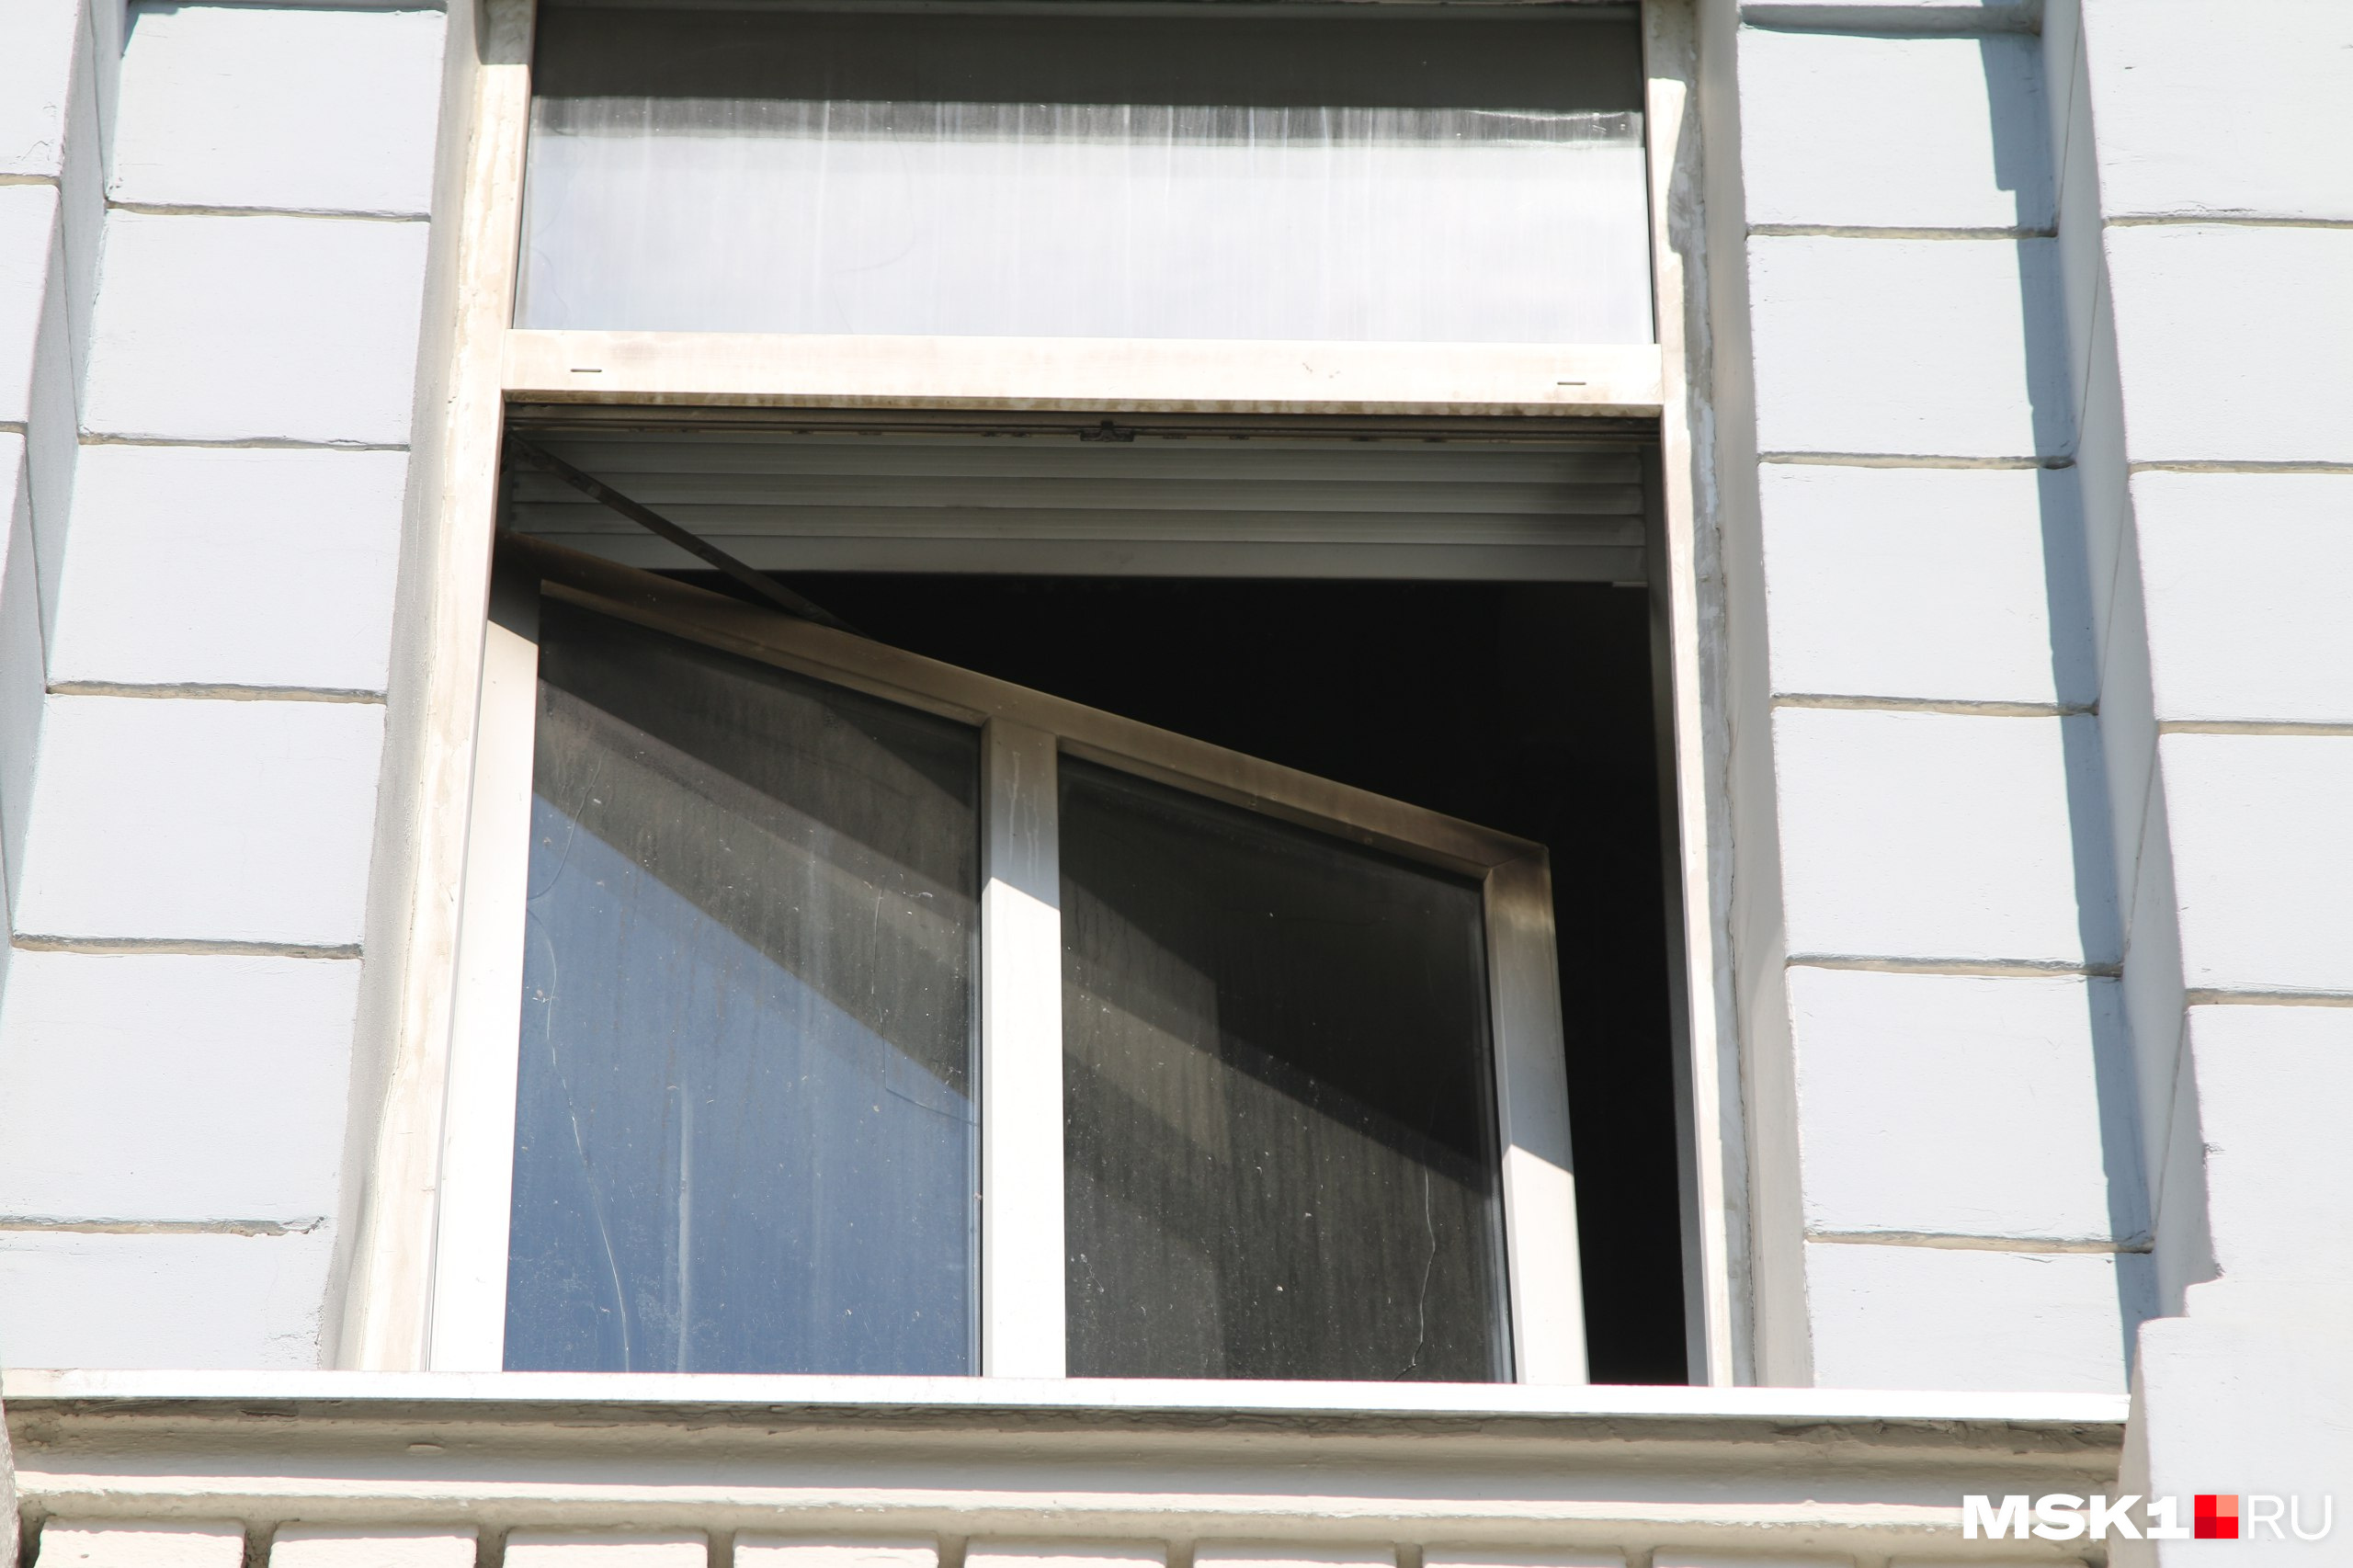 По рассказам одного из жильцов, стекла в окнах потрескались из-за перепада температуры